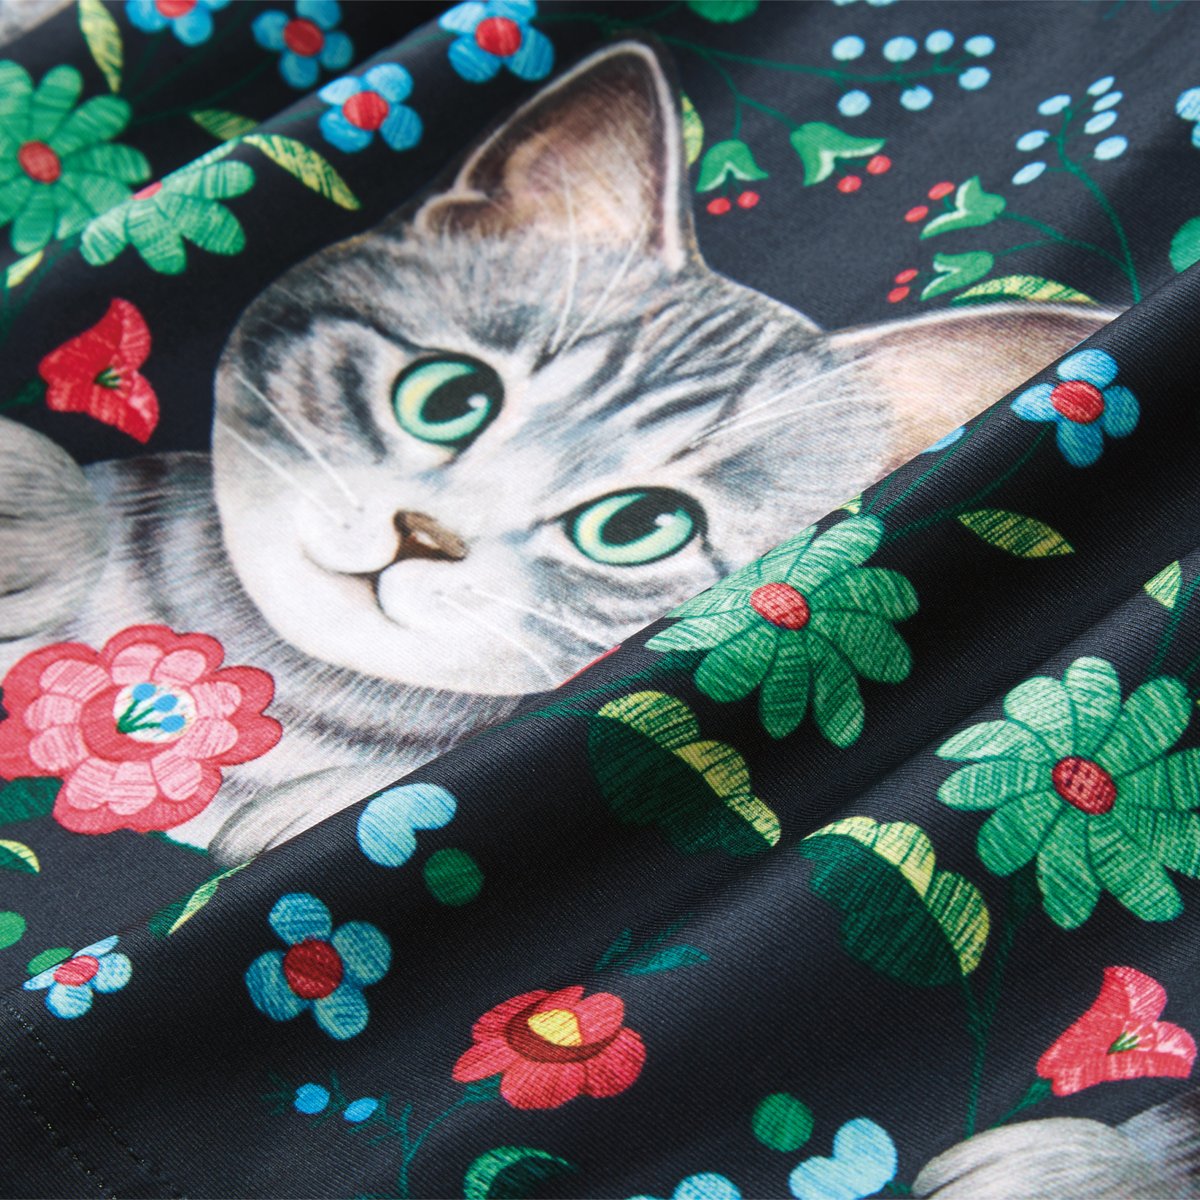 「チュールと揺らめく猫さん🐈

サバトラ猫と刺繍風のお花のイラストを華やかにプリ」|フェリシモ「猫部」のイラスト